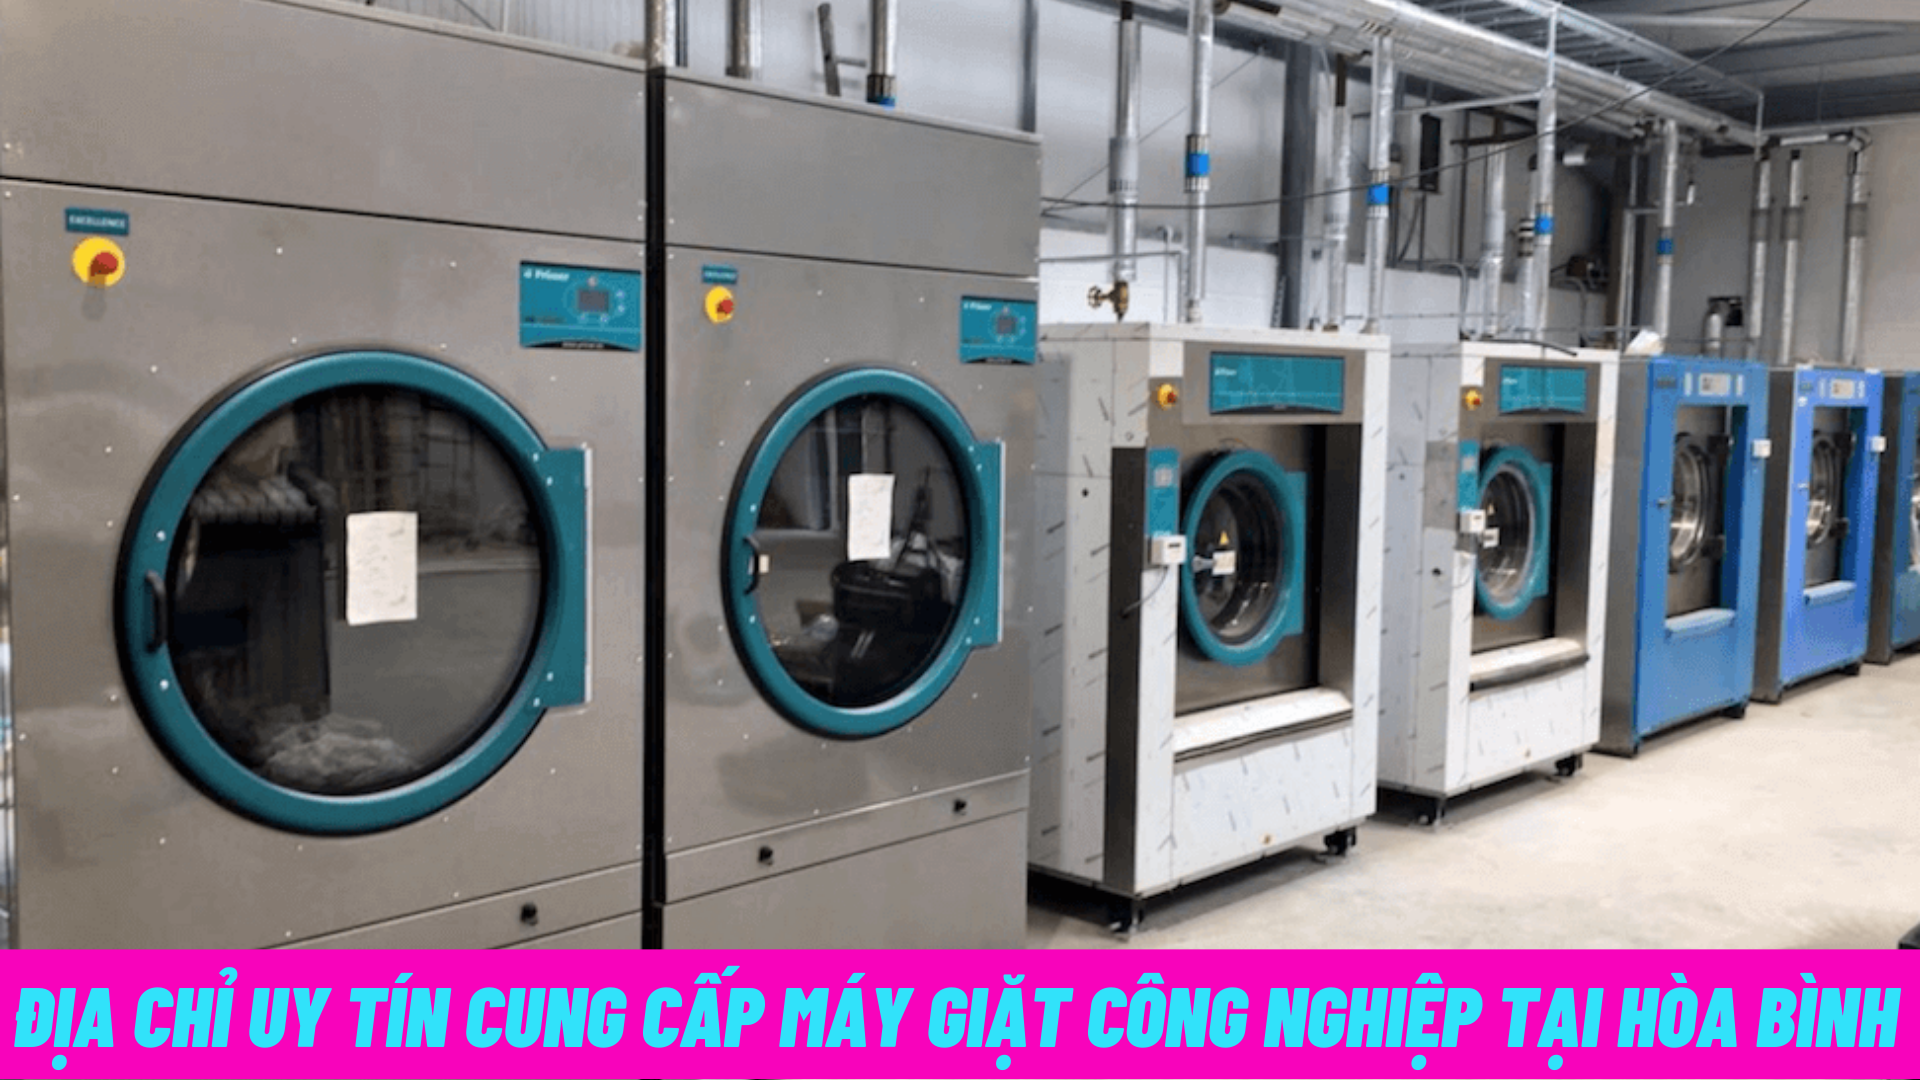 Địa chỉ uy tín cung cấp máy giặt công nghiệp tại Hòa Bình